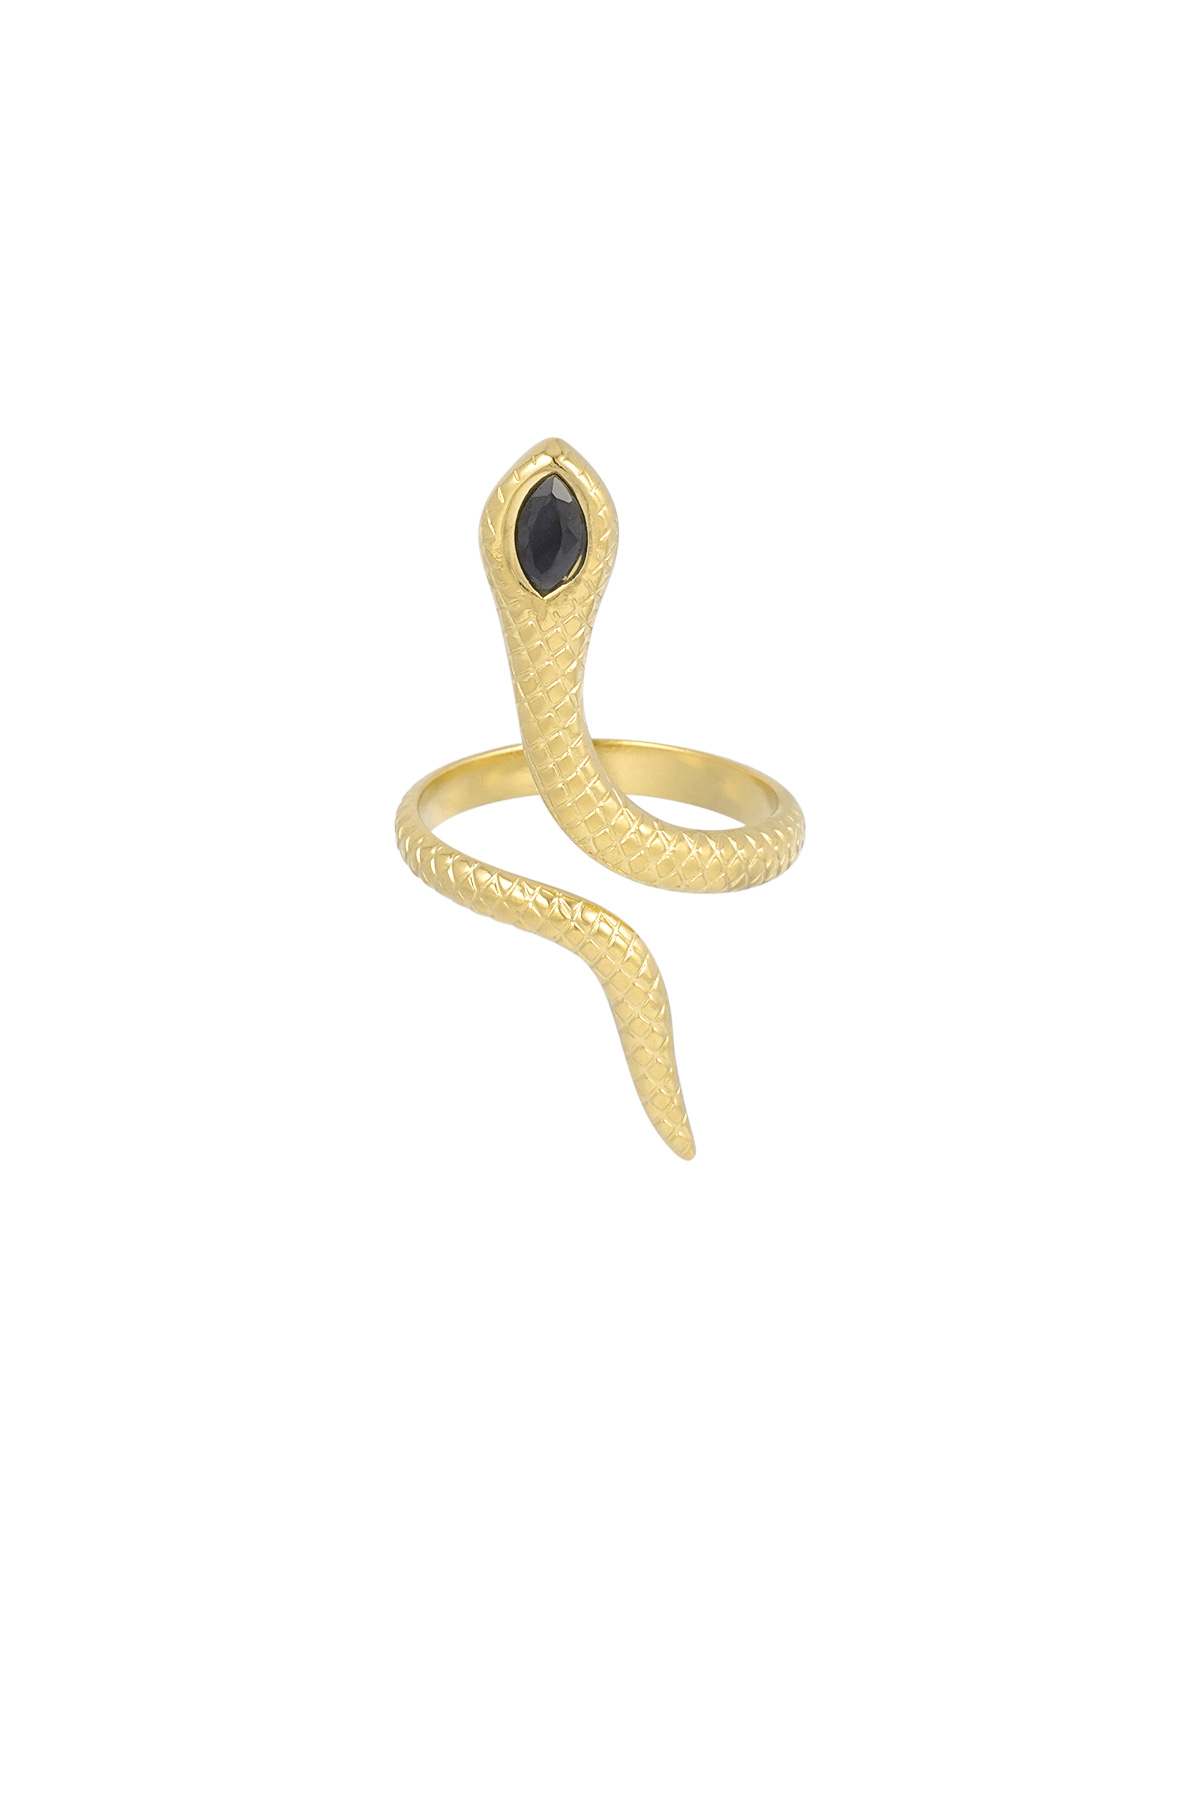 Kara yılan yüzüğü - altın 